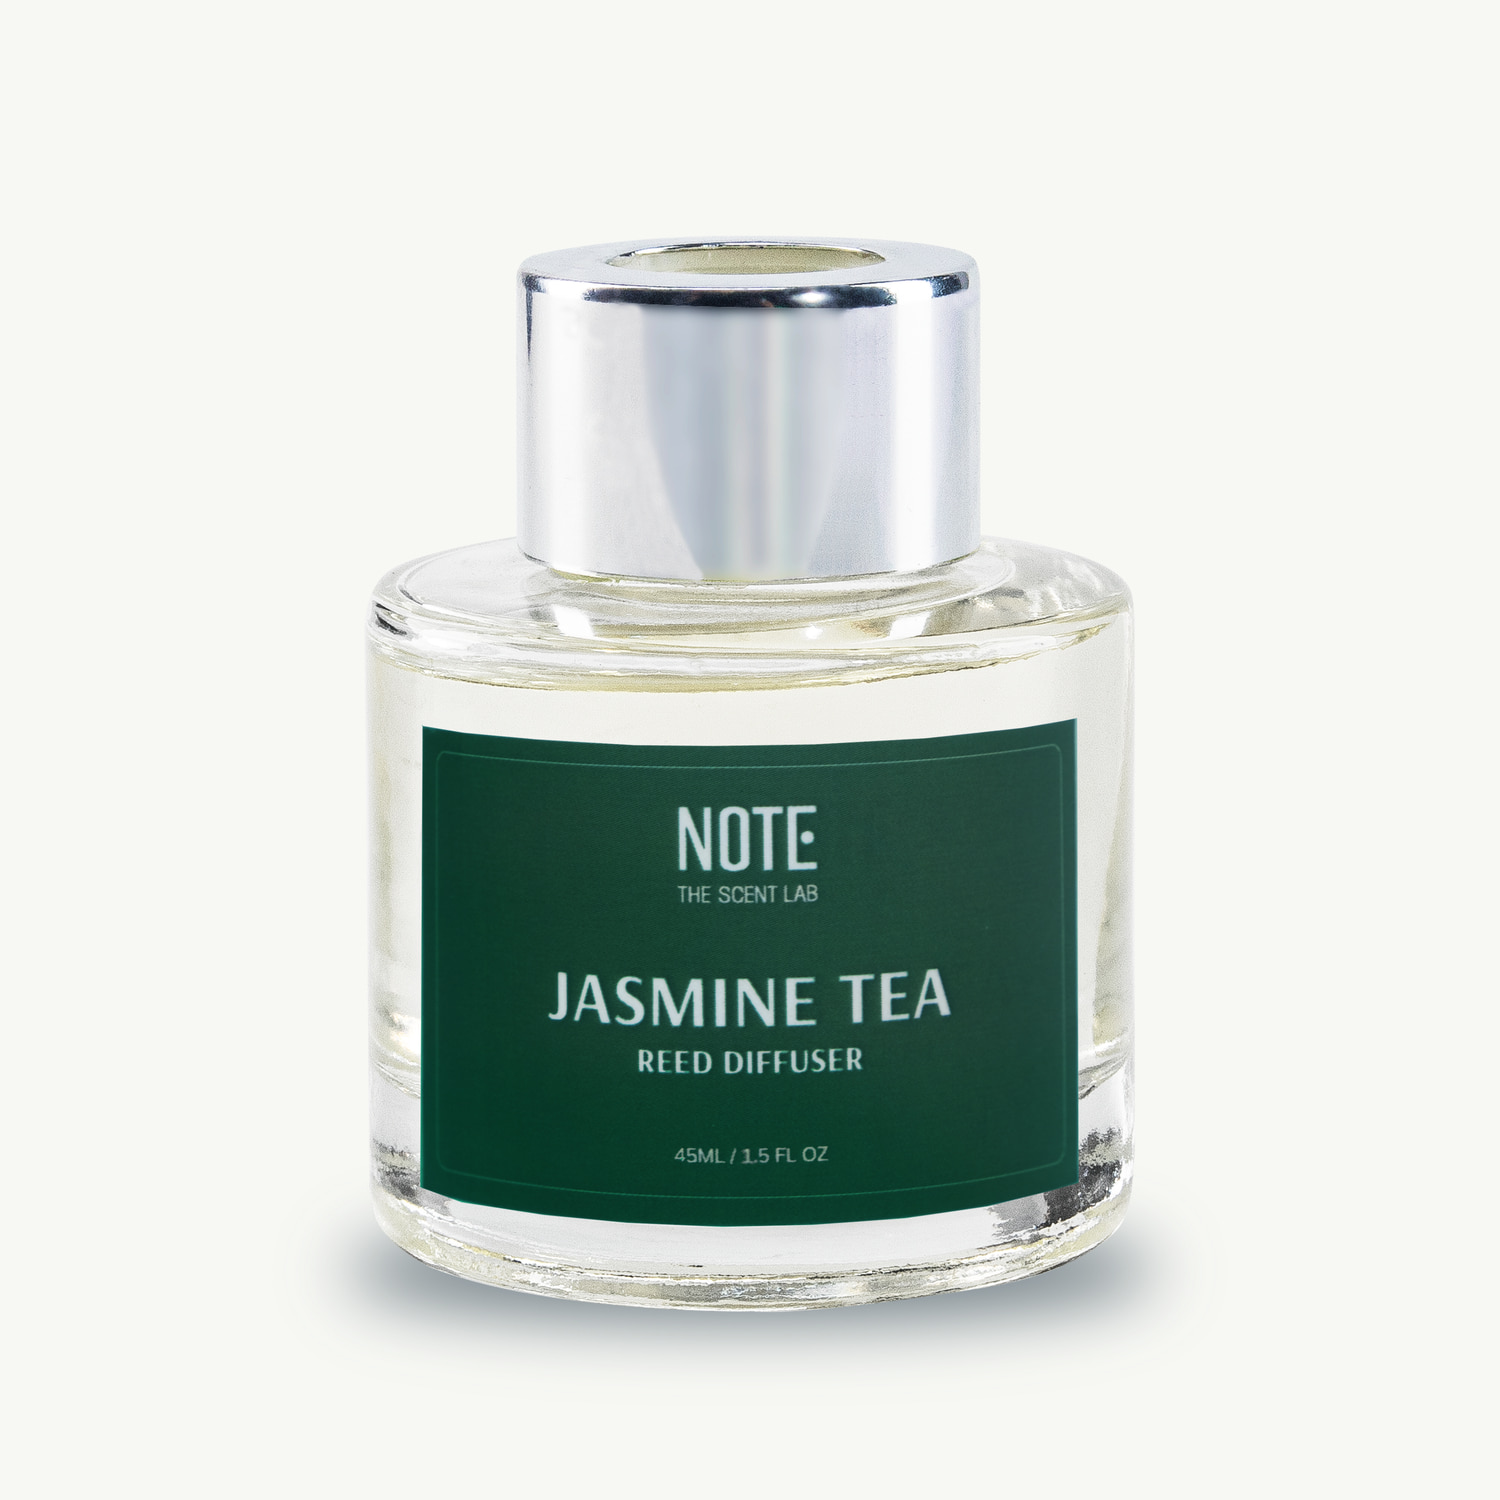 Khuếch tán hương Jasmine Tea 45ml của NOTE - The Scent Lab - sản phẩm mùi hương từ NOTE - The Scent Lab